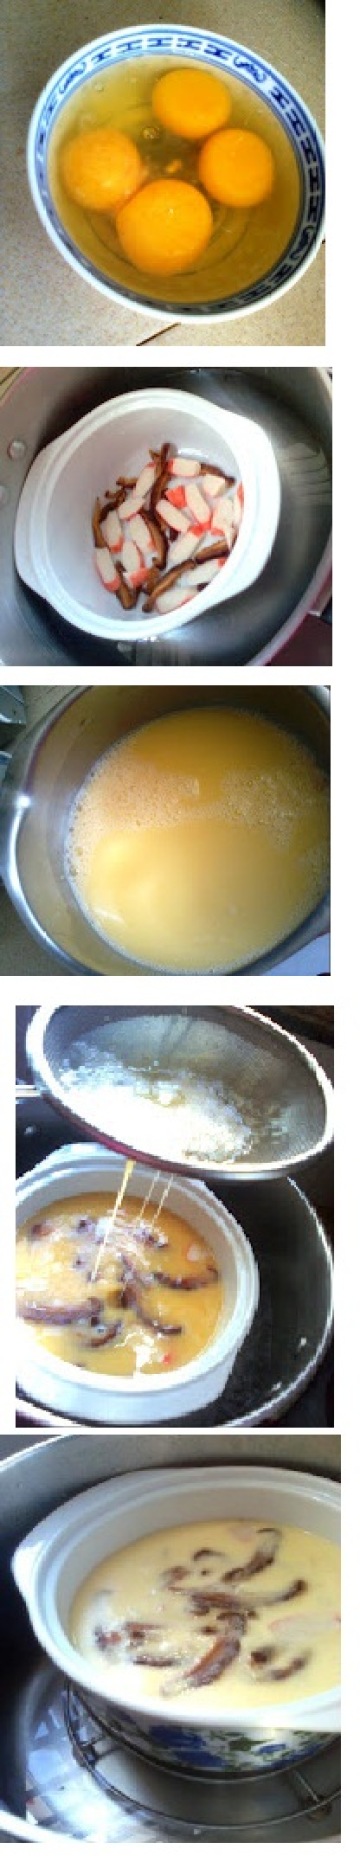 嫩滑水蛋茶碗蒸做法